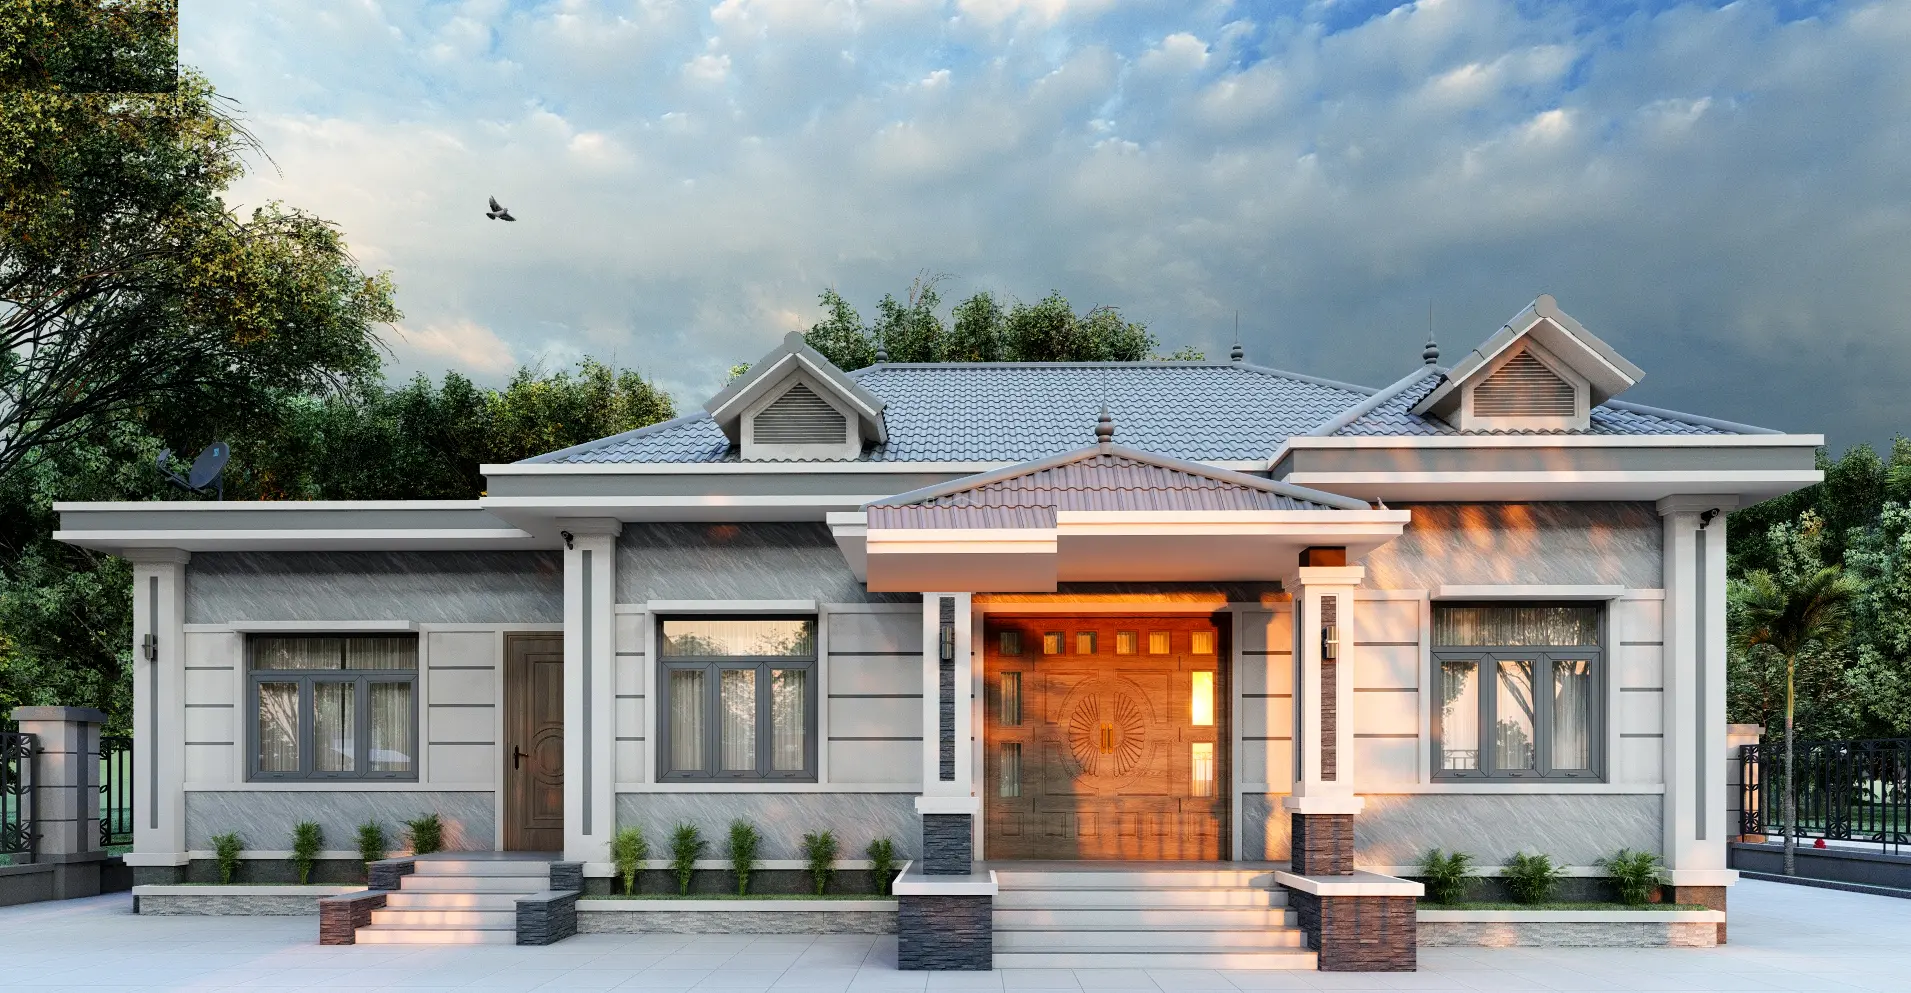 Căn nhà sở hữu vẻ đẹp hiện đại khi kết hợp với hệ mái Thái cao cấp, chất lượng